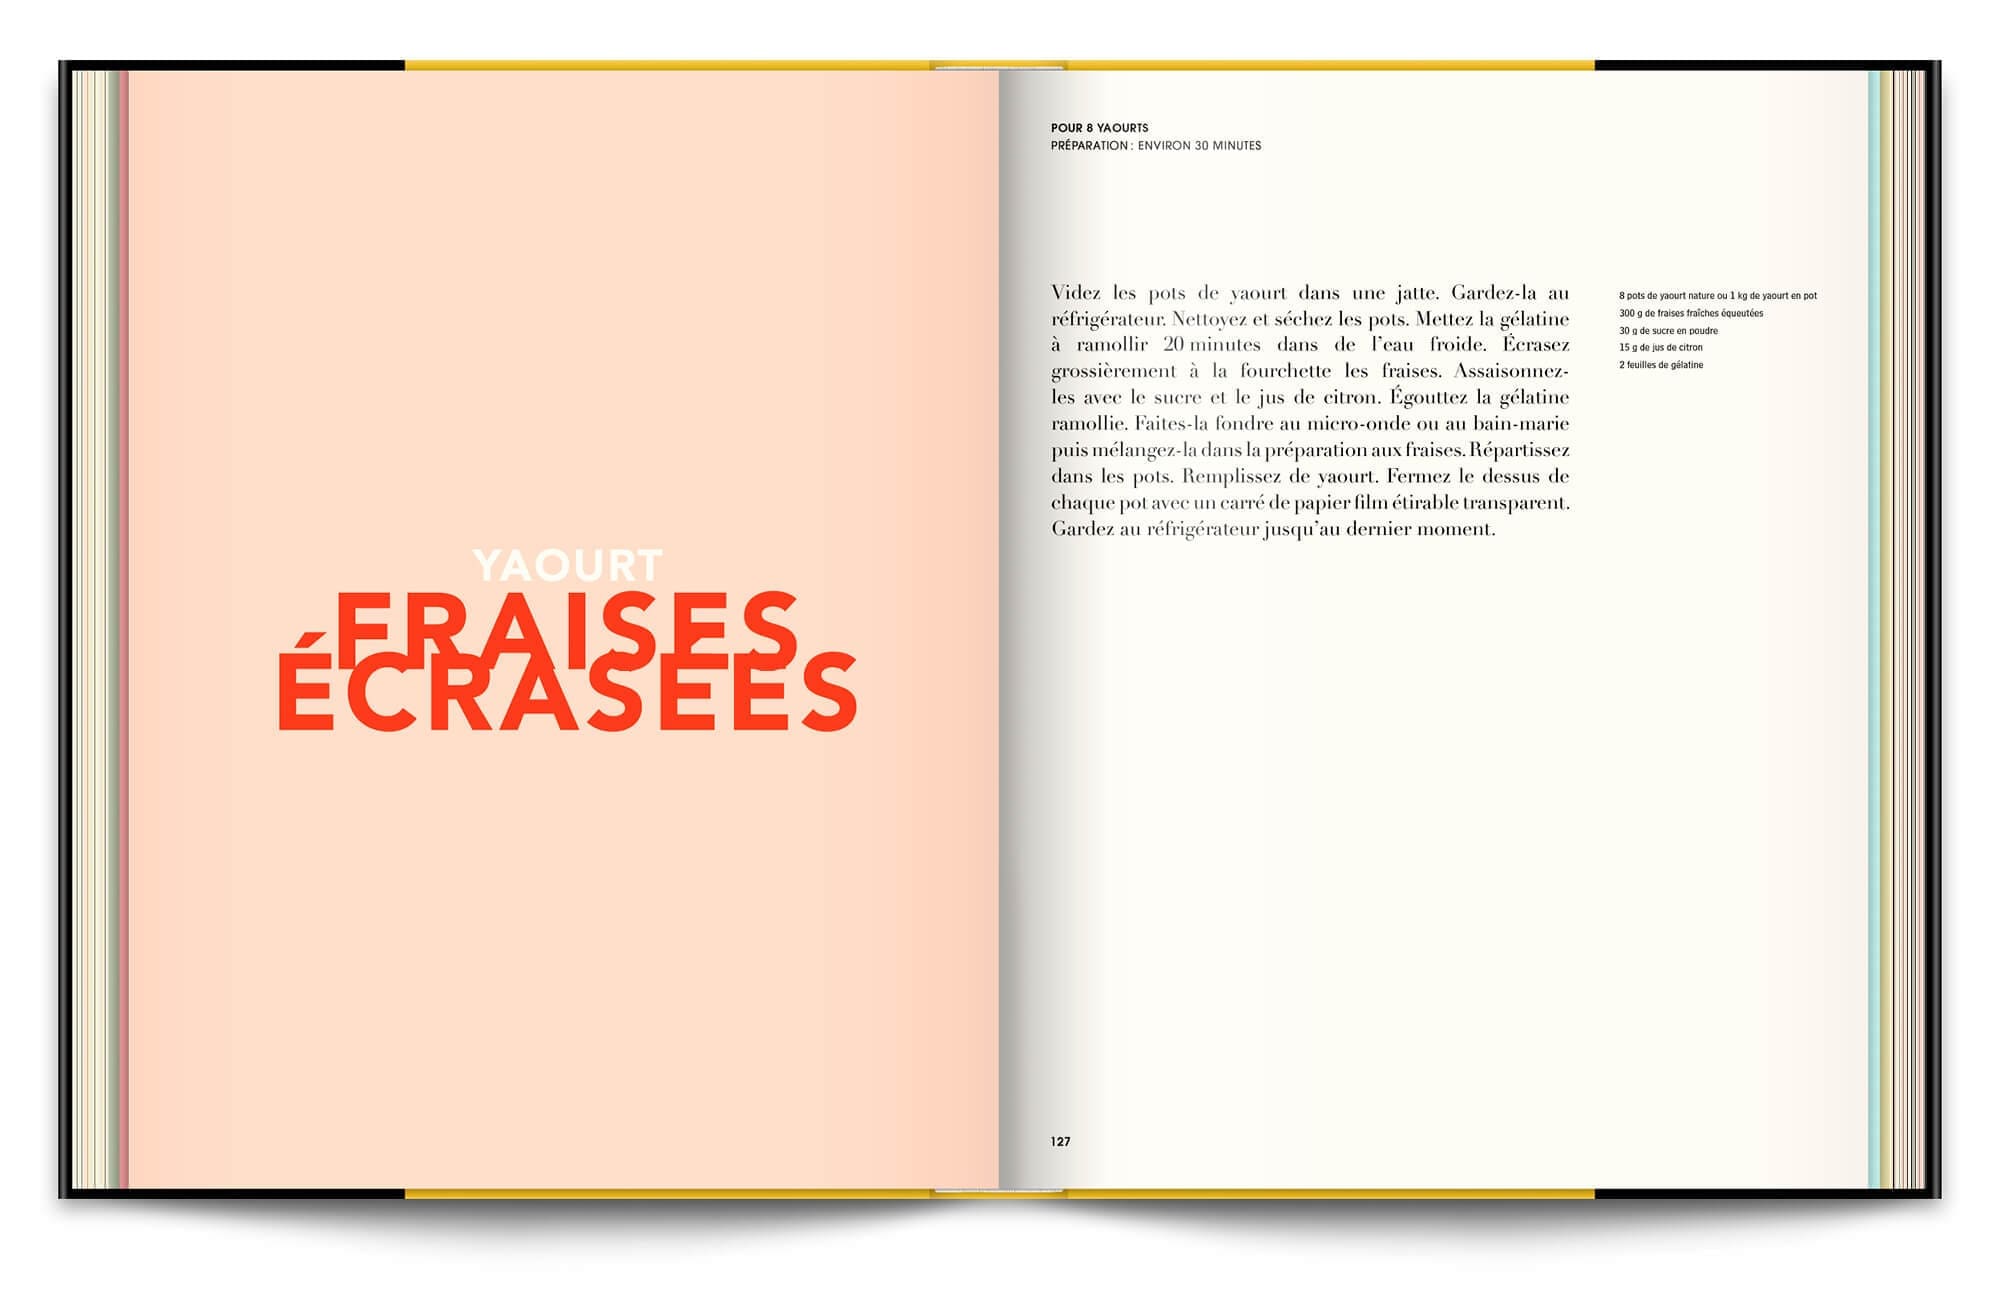 Le livre Infiniment de Pierre Hermé, typographie expressive en rapport avec les recettes et couleurs acidulées pour le yaourt fraises écrasées, design éditorial IchetKar